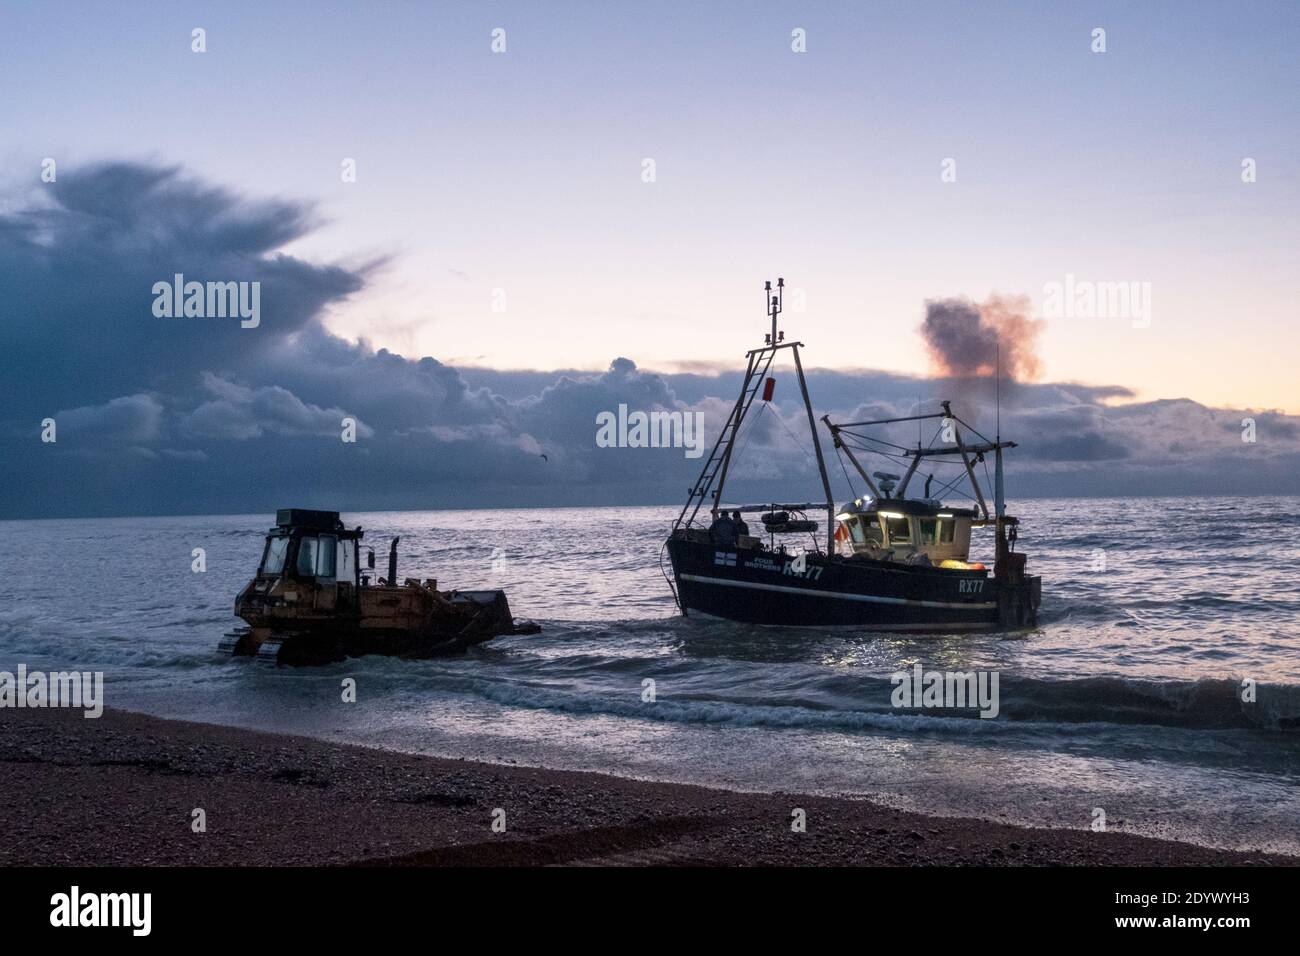 Hastings, East Sussex, Royaume-Uni 28 décembre 2020. Le chalutier de pêche de Hastings se lance à l'aube, depuis la plage des pêcheurs de la vieille ville de Stade. Avec plus de 25 bateaux, Hastings possède la plus grande flotte de pêche lancée sur la plage en Europe. Carolyn Clarke/Alamy Live News Banque D'Images